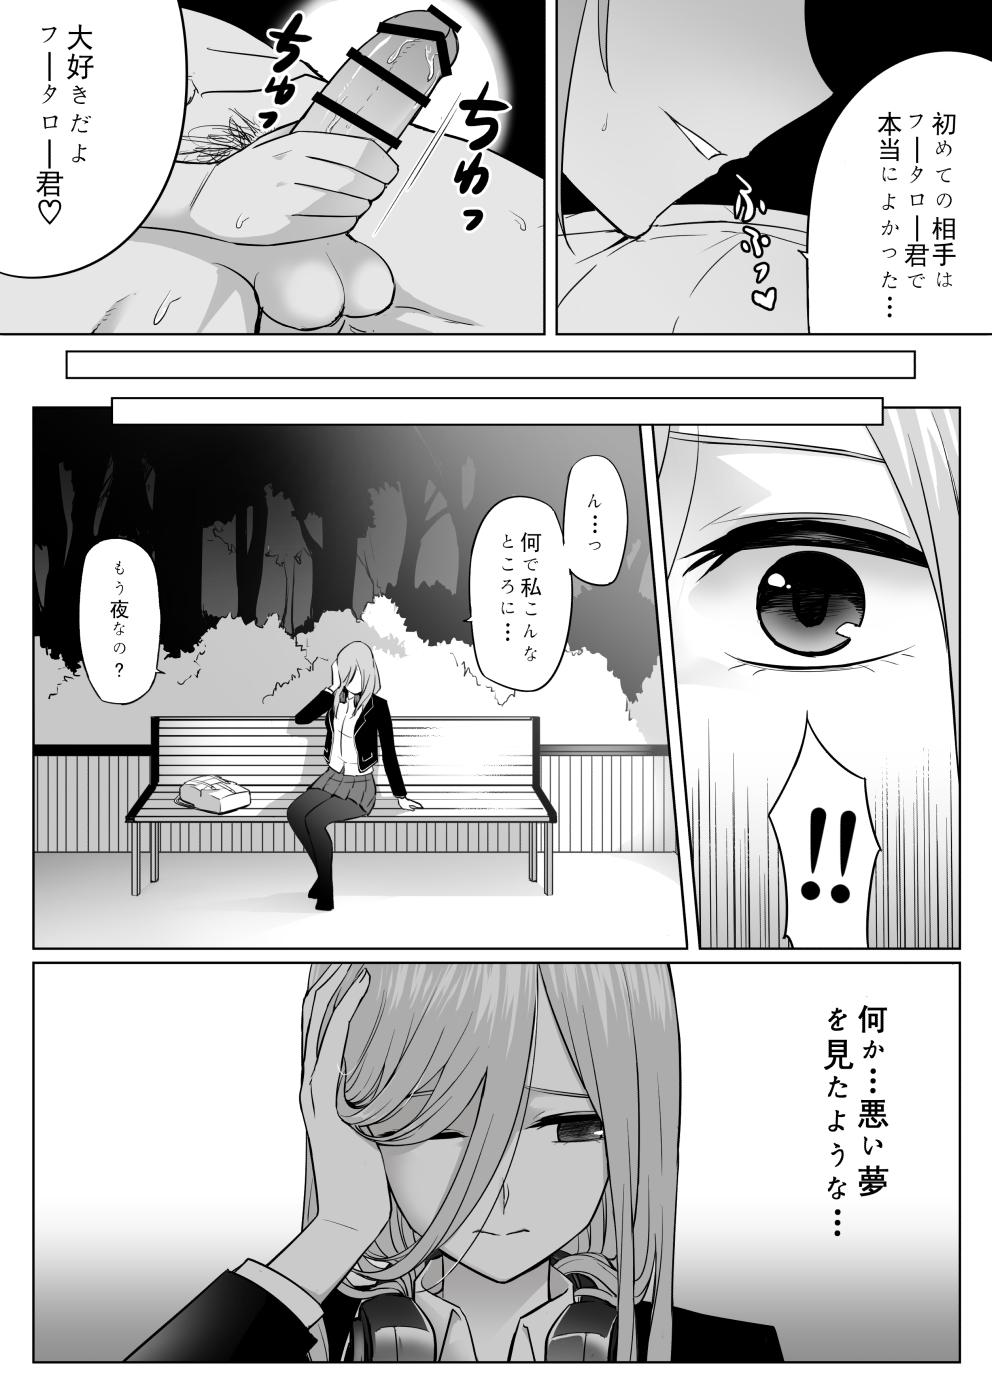 Gaysex Nakano ke bijin shimai shojo soushitsu - Gotoubun no hanayome Dirty - Page 30